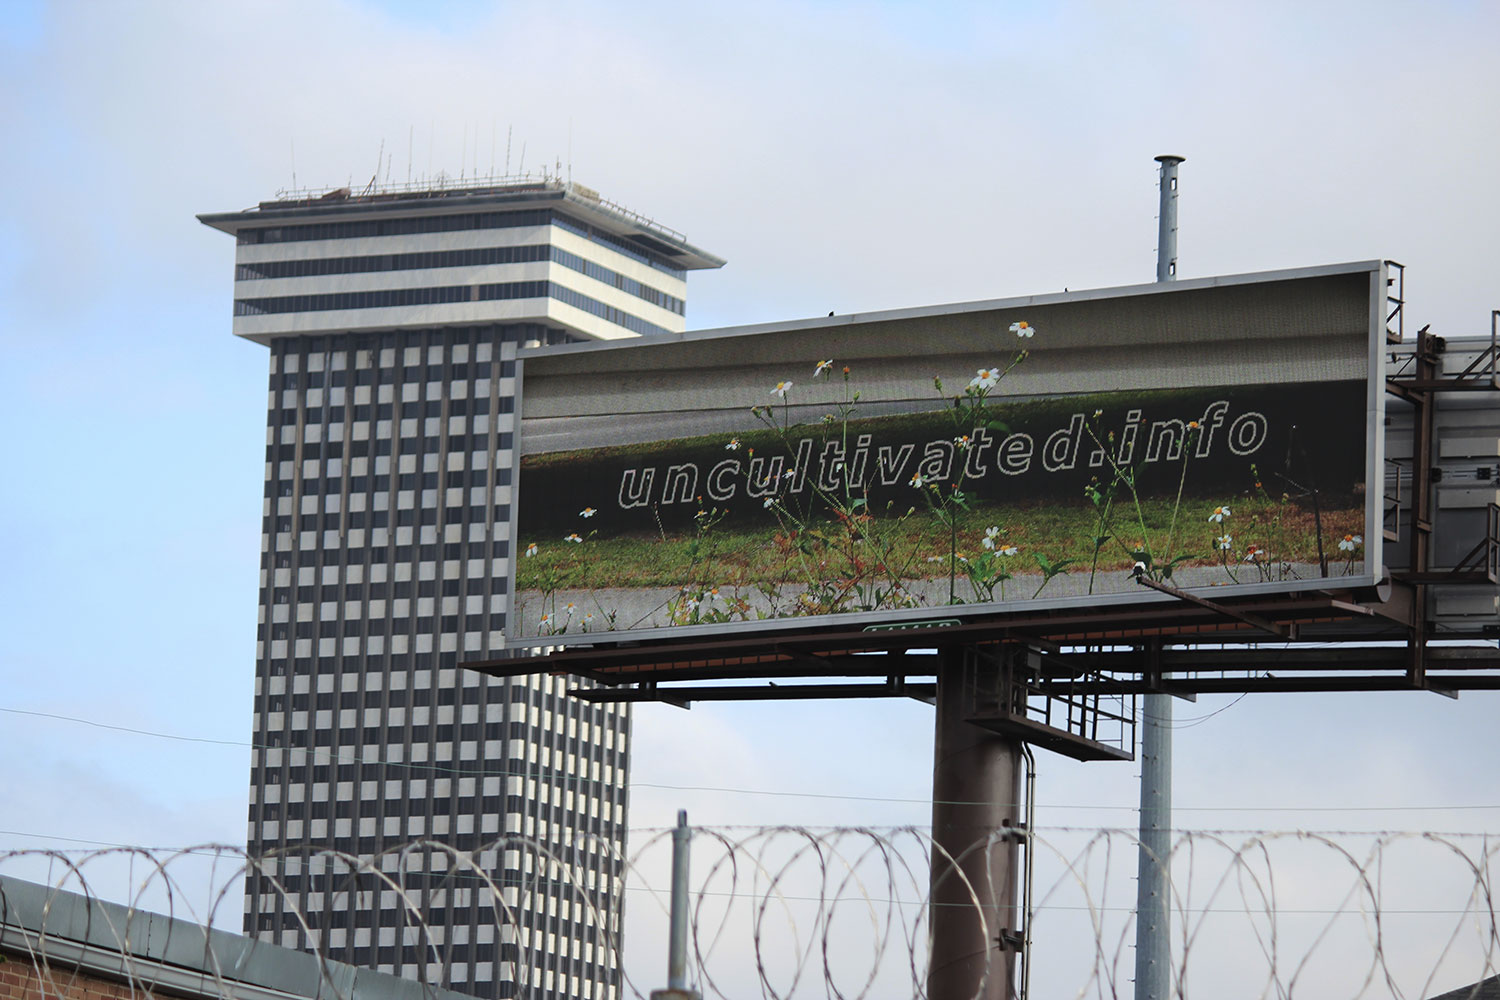 Digital billboard